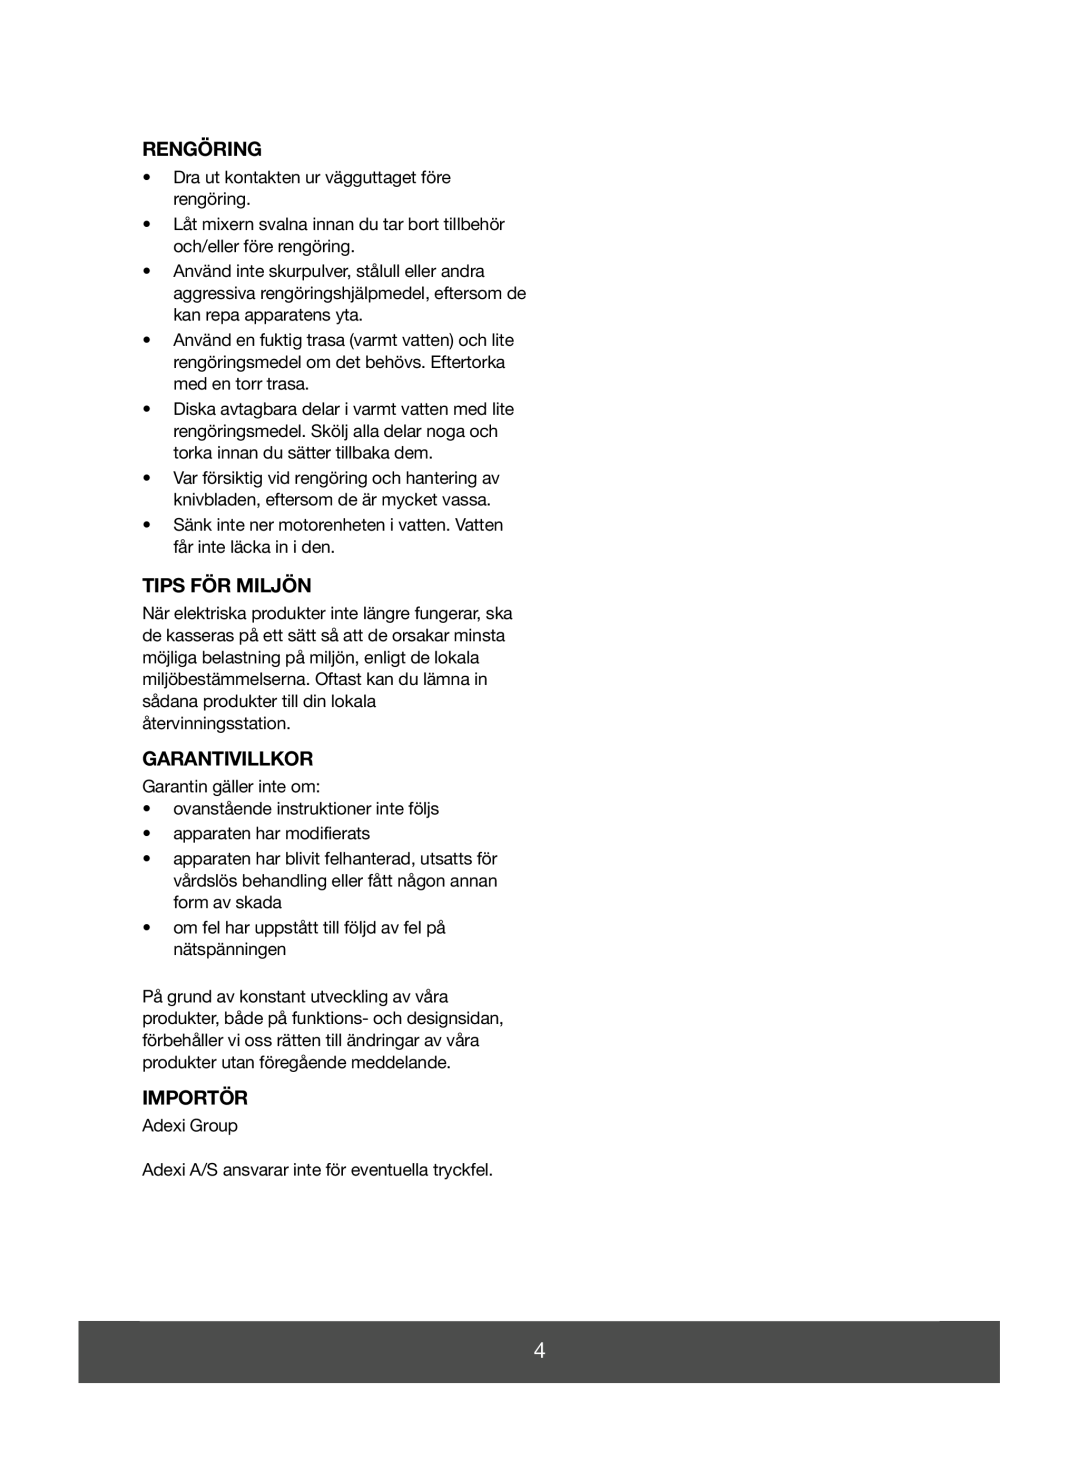 Melissa 646-036 manual Rengöring, Tips För Miljön, Garantivillkor, Importör 